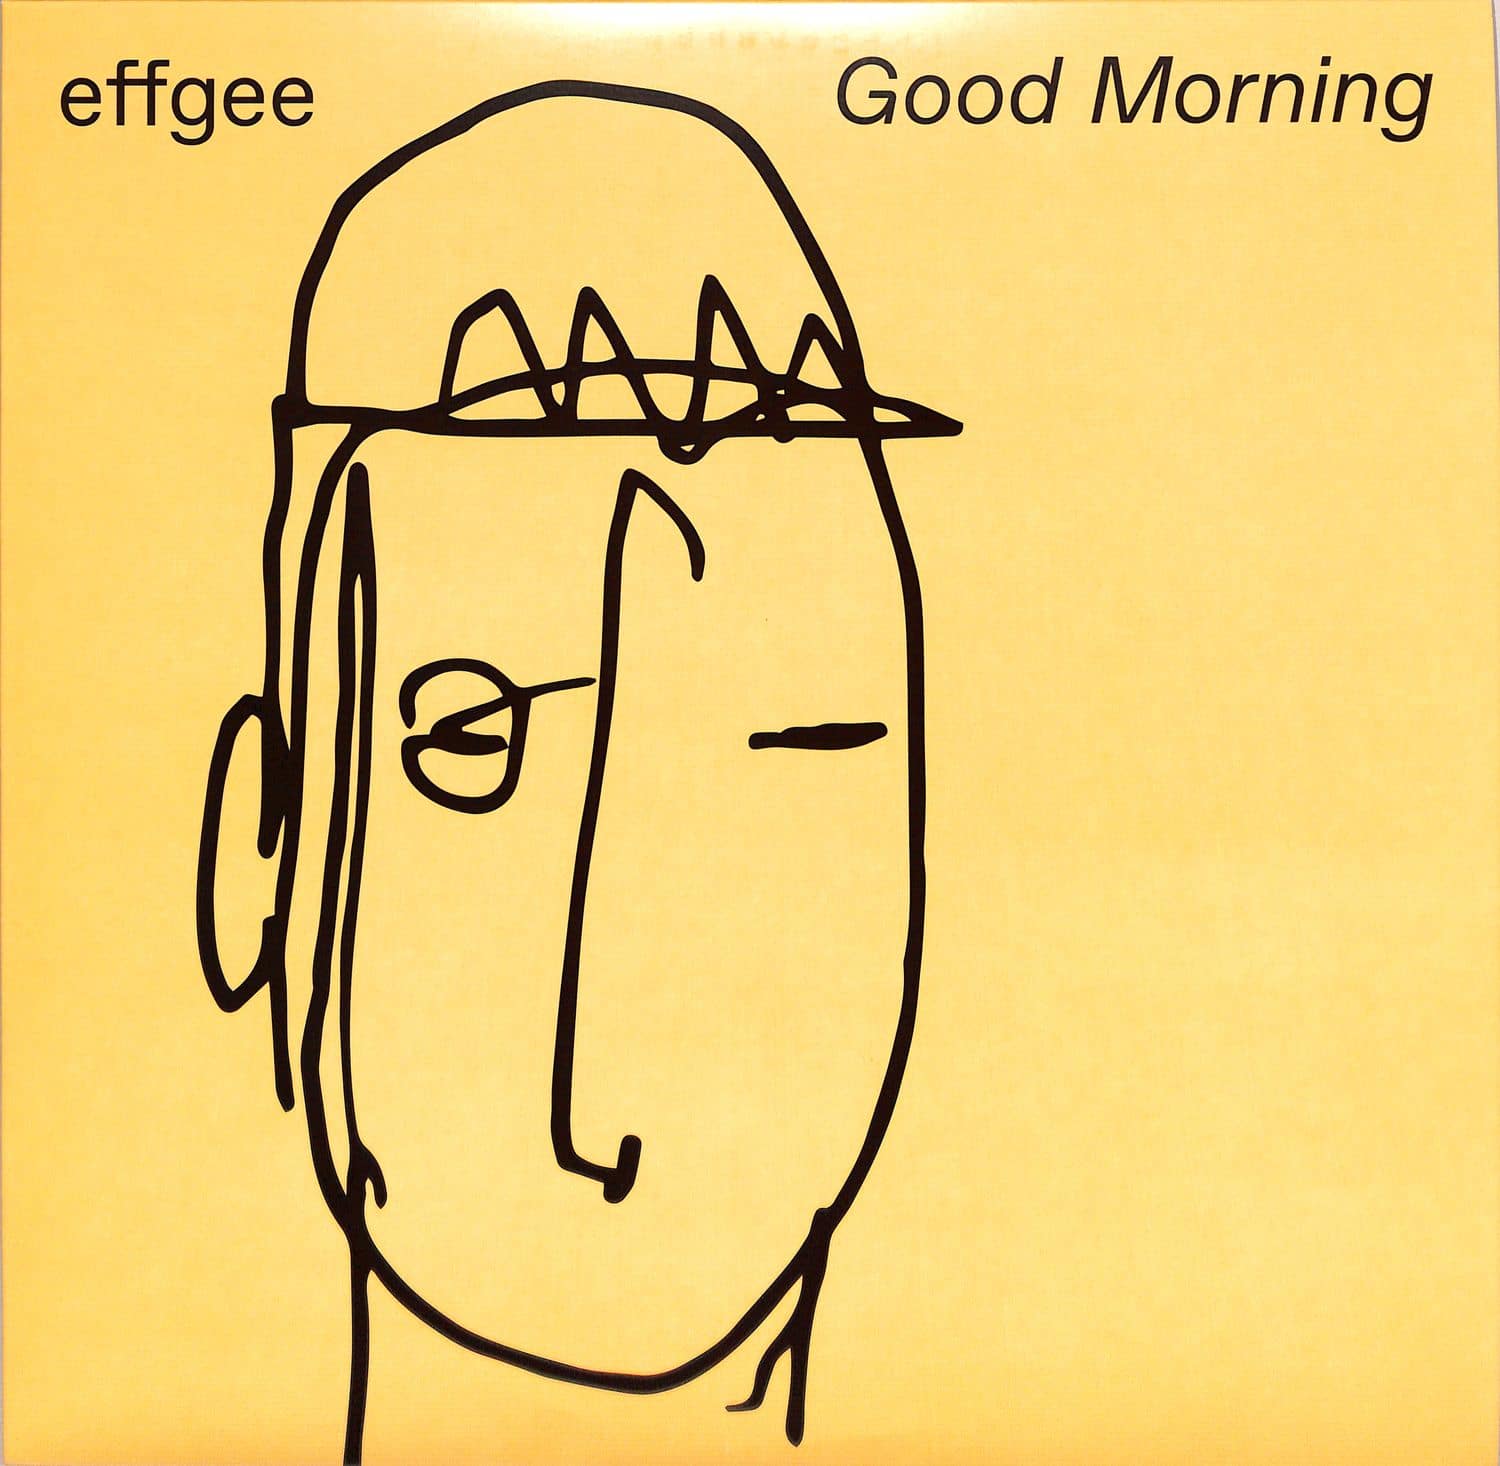 Effgee - GOOD MORNING 